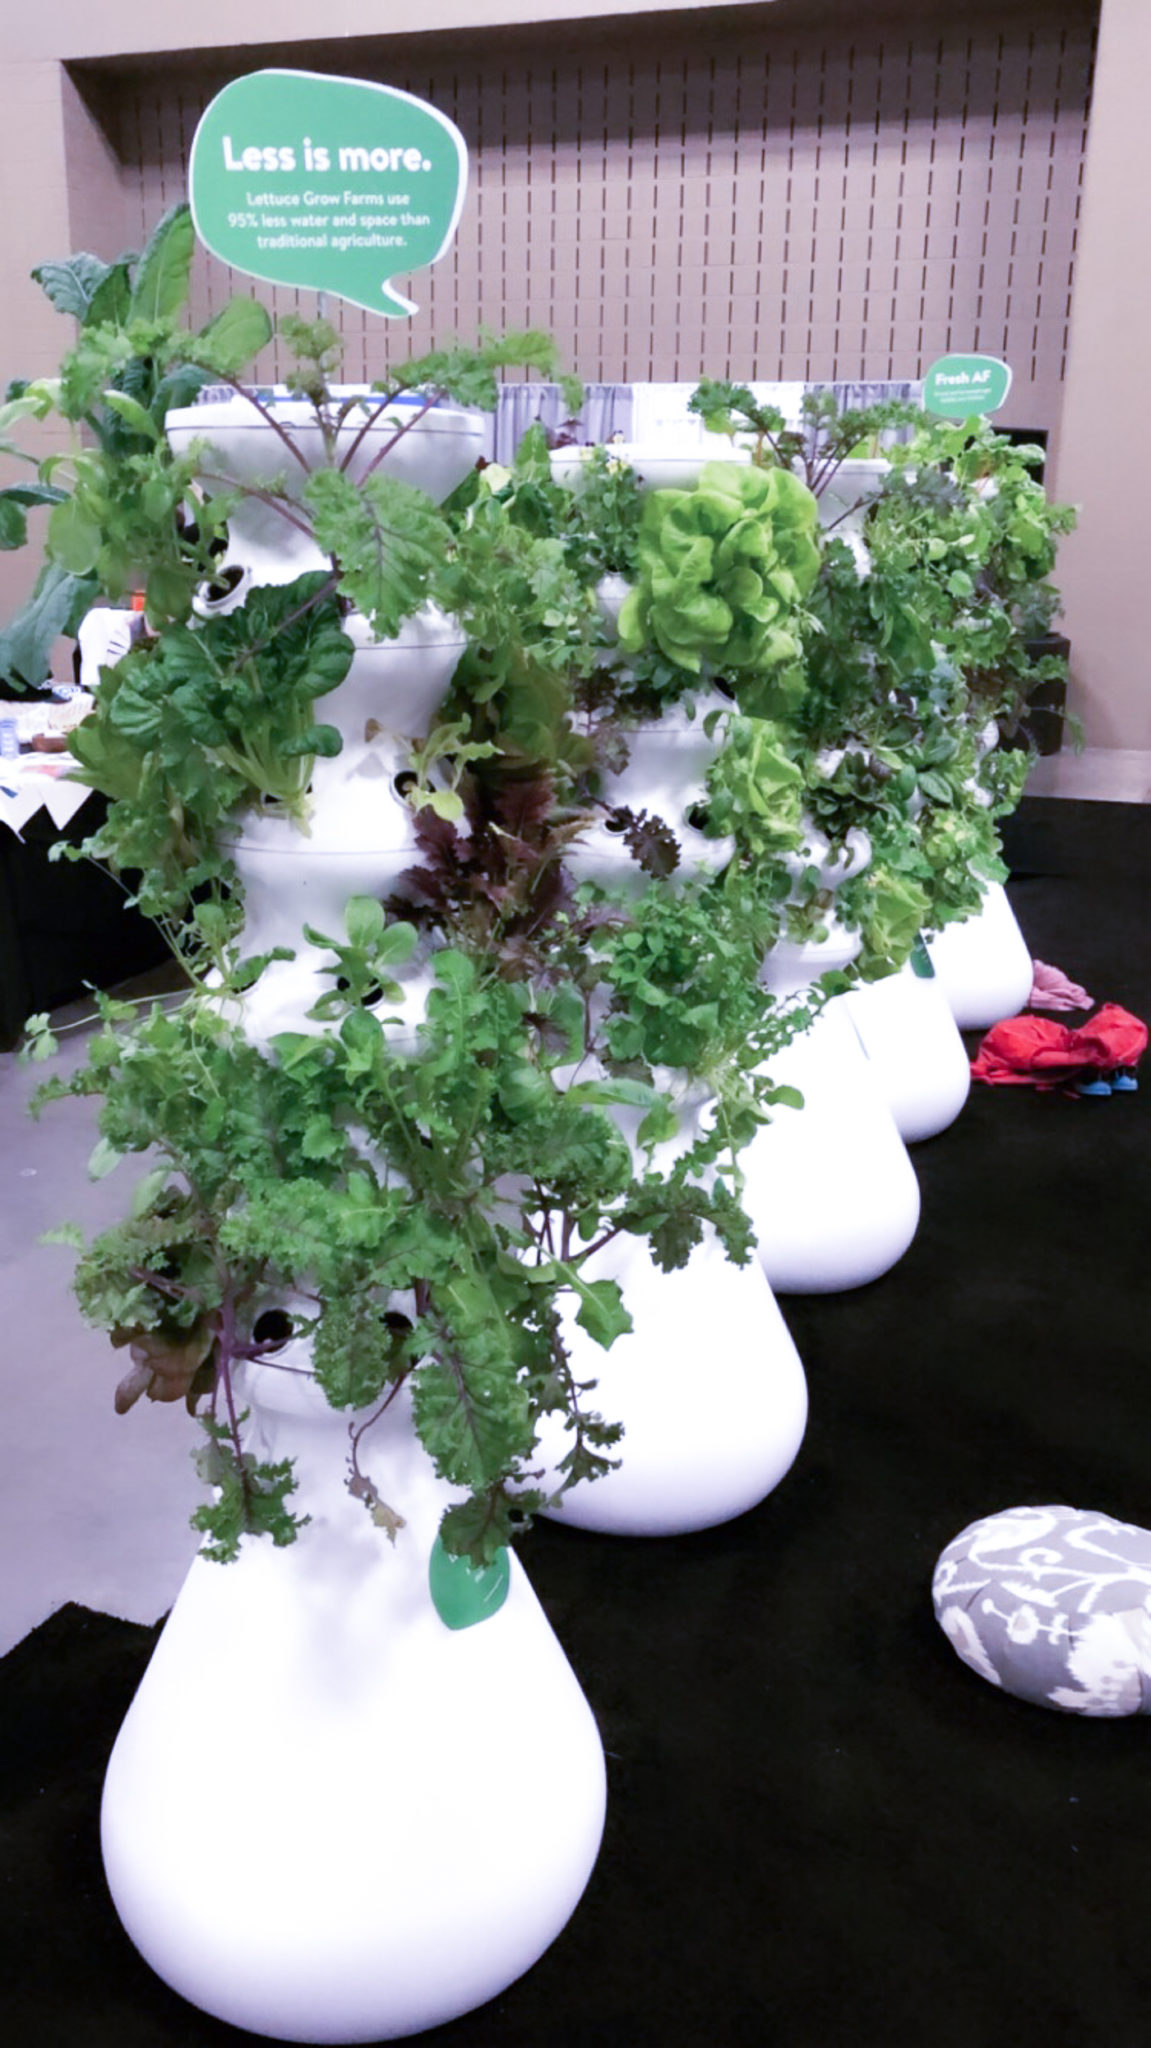 SXSW wellness expo lettuce grow